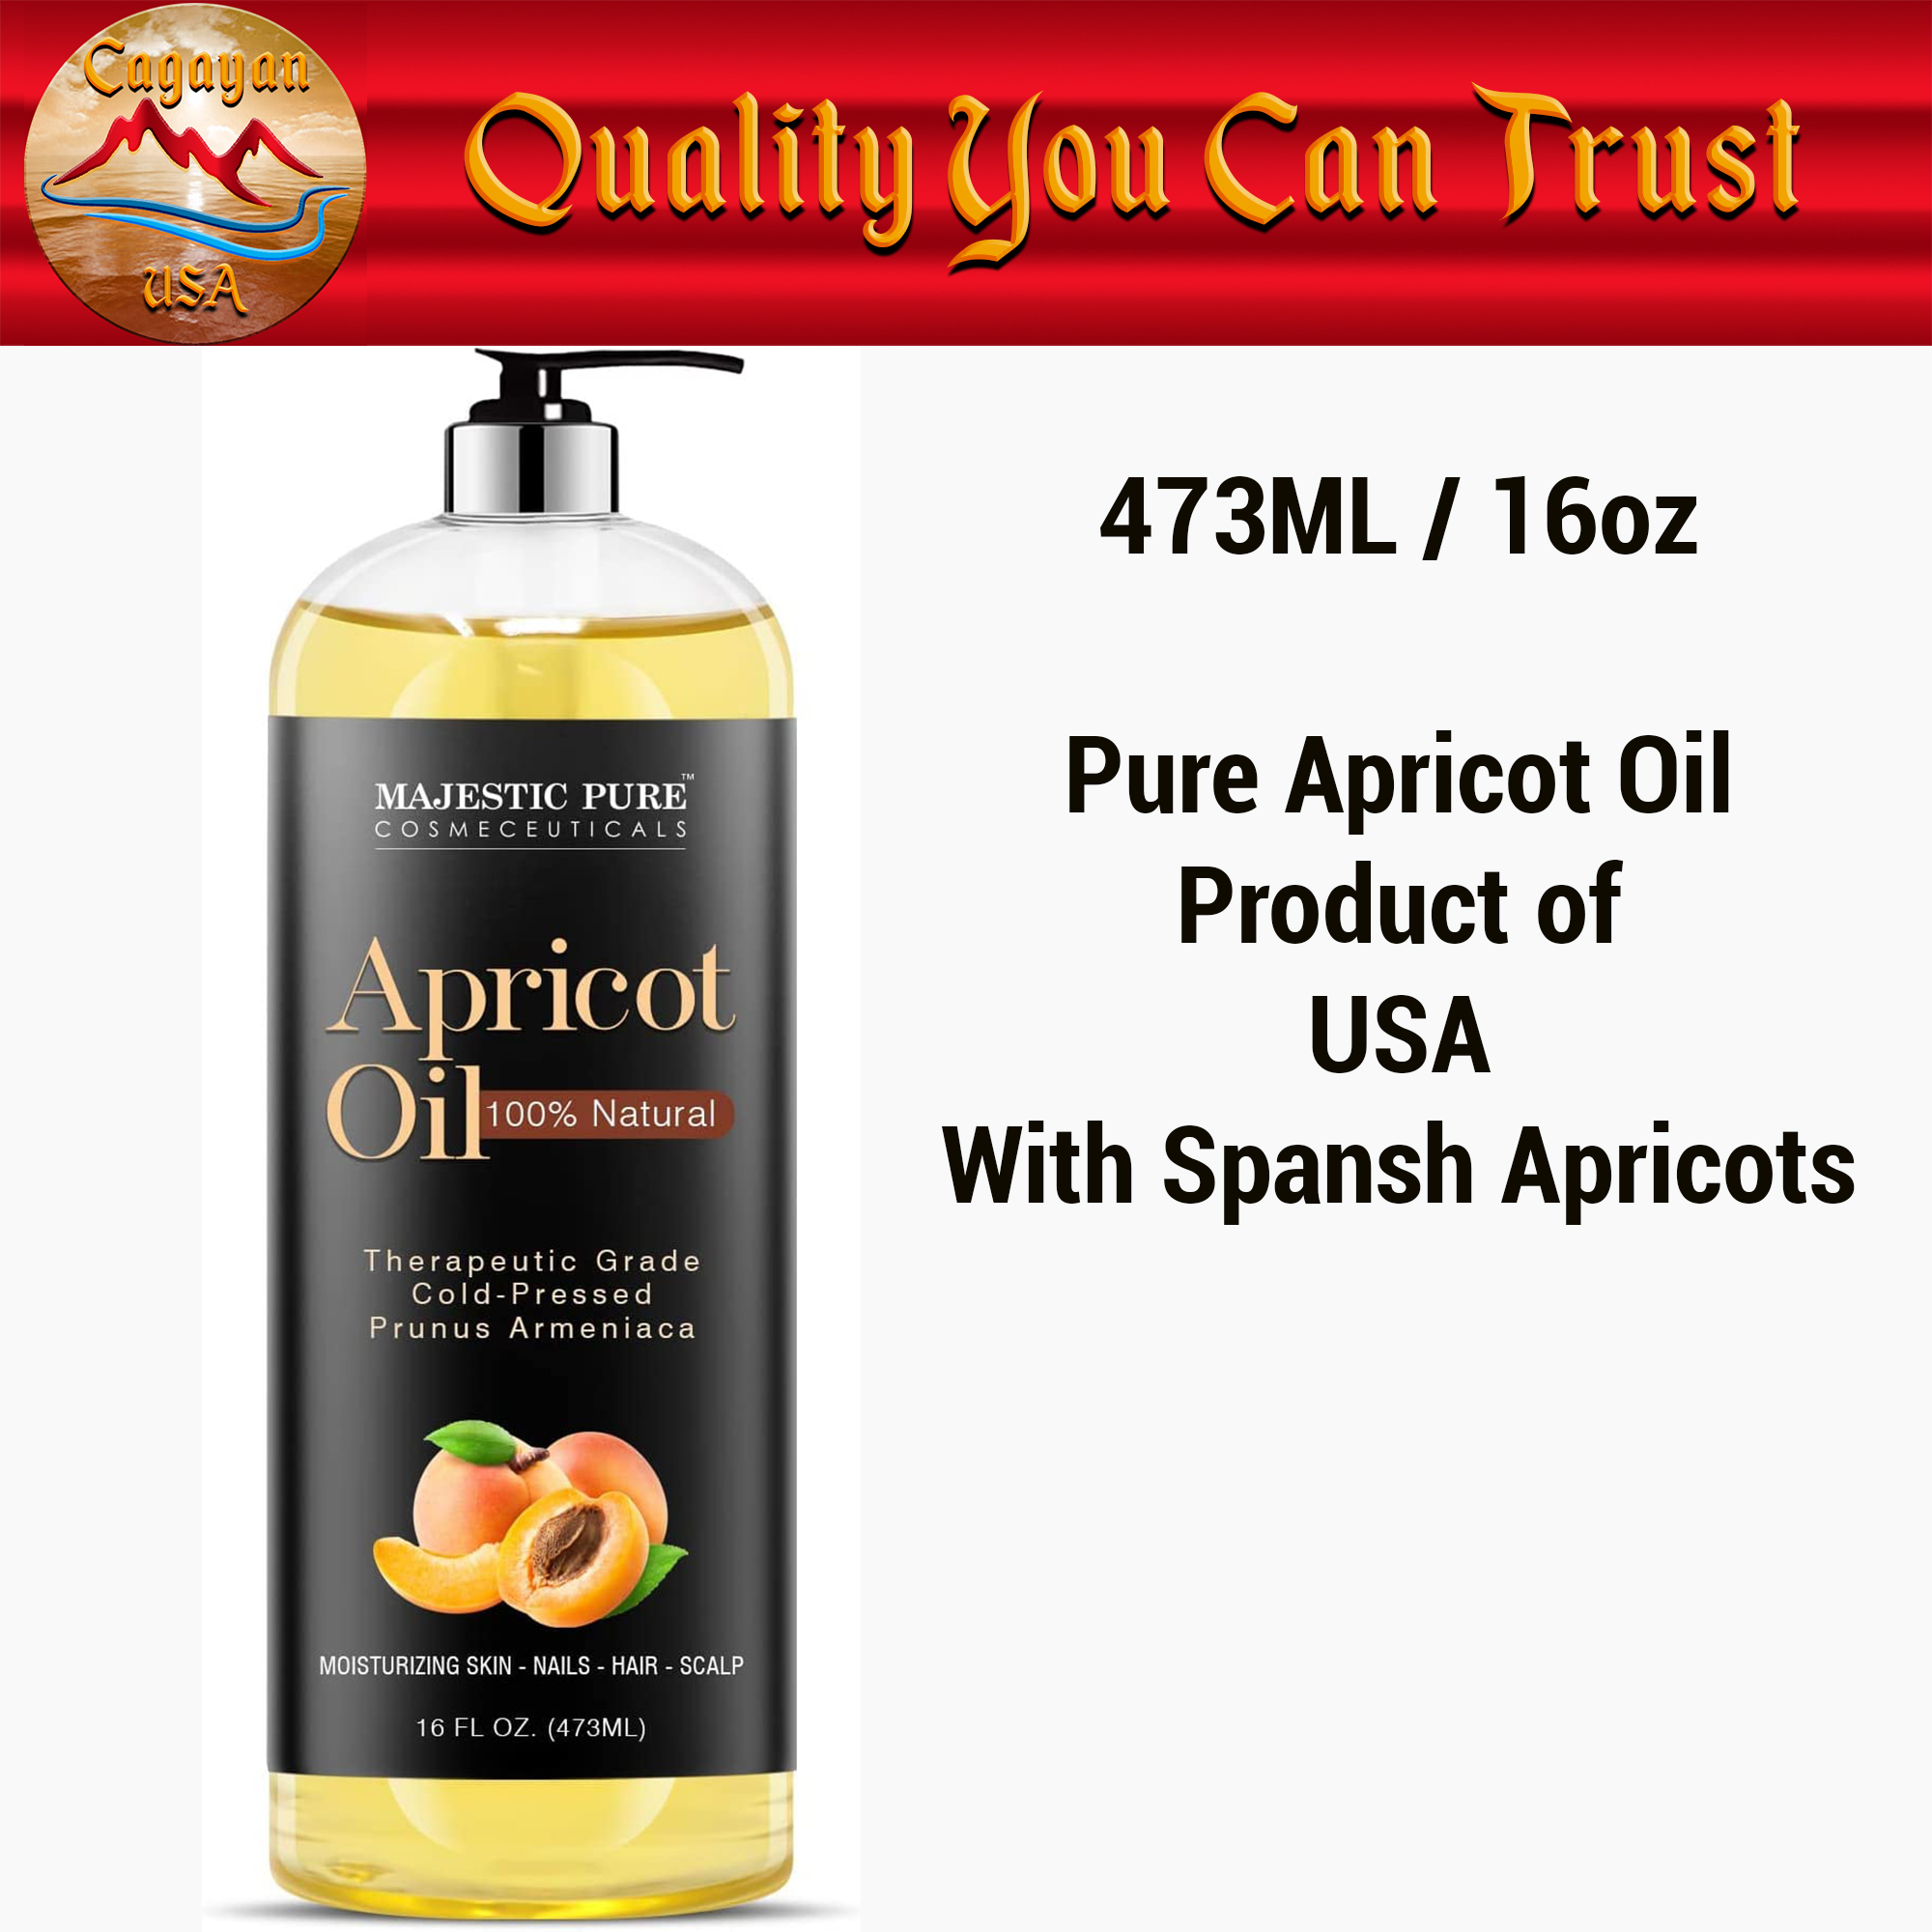 Majestic Pure Apricot Oil, 100% Pure and Natural, Cold-Pressed, 16 fl oz 